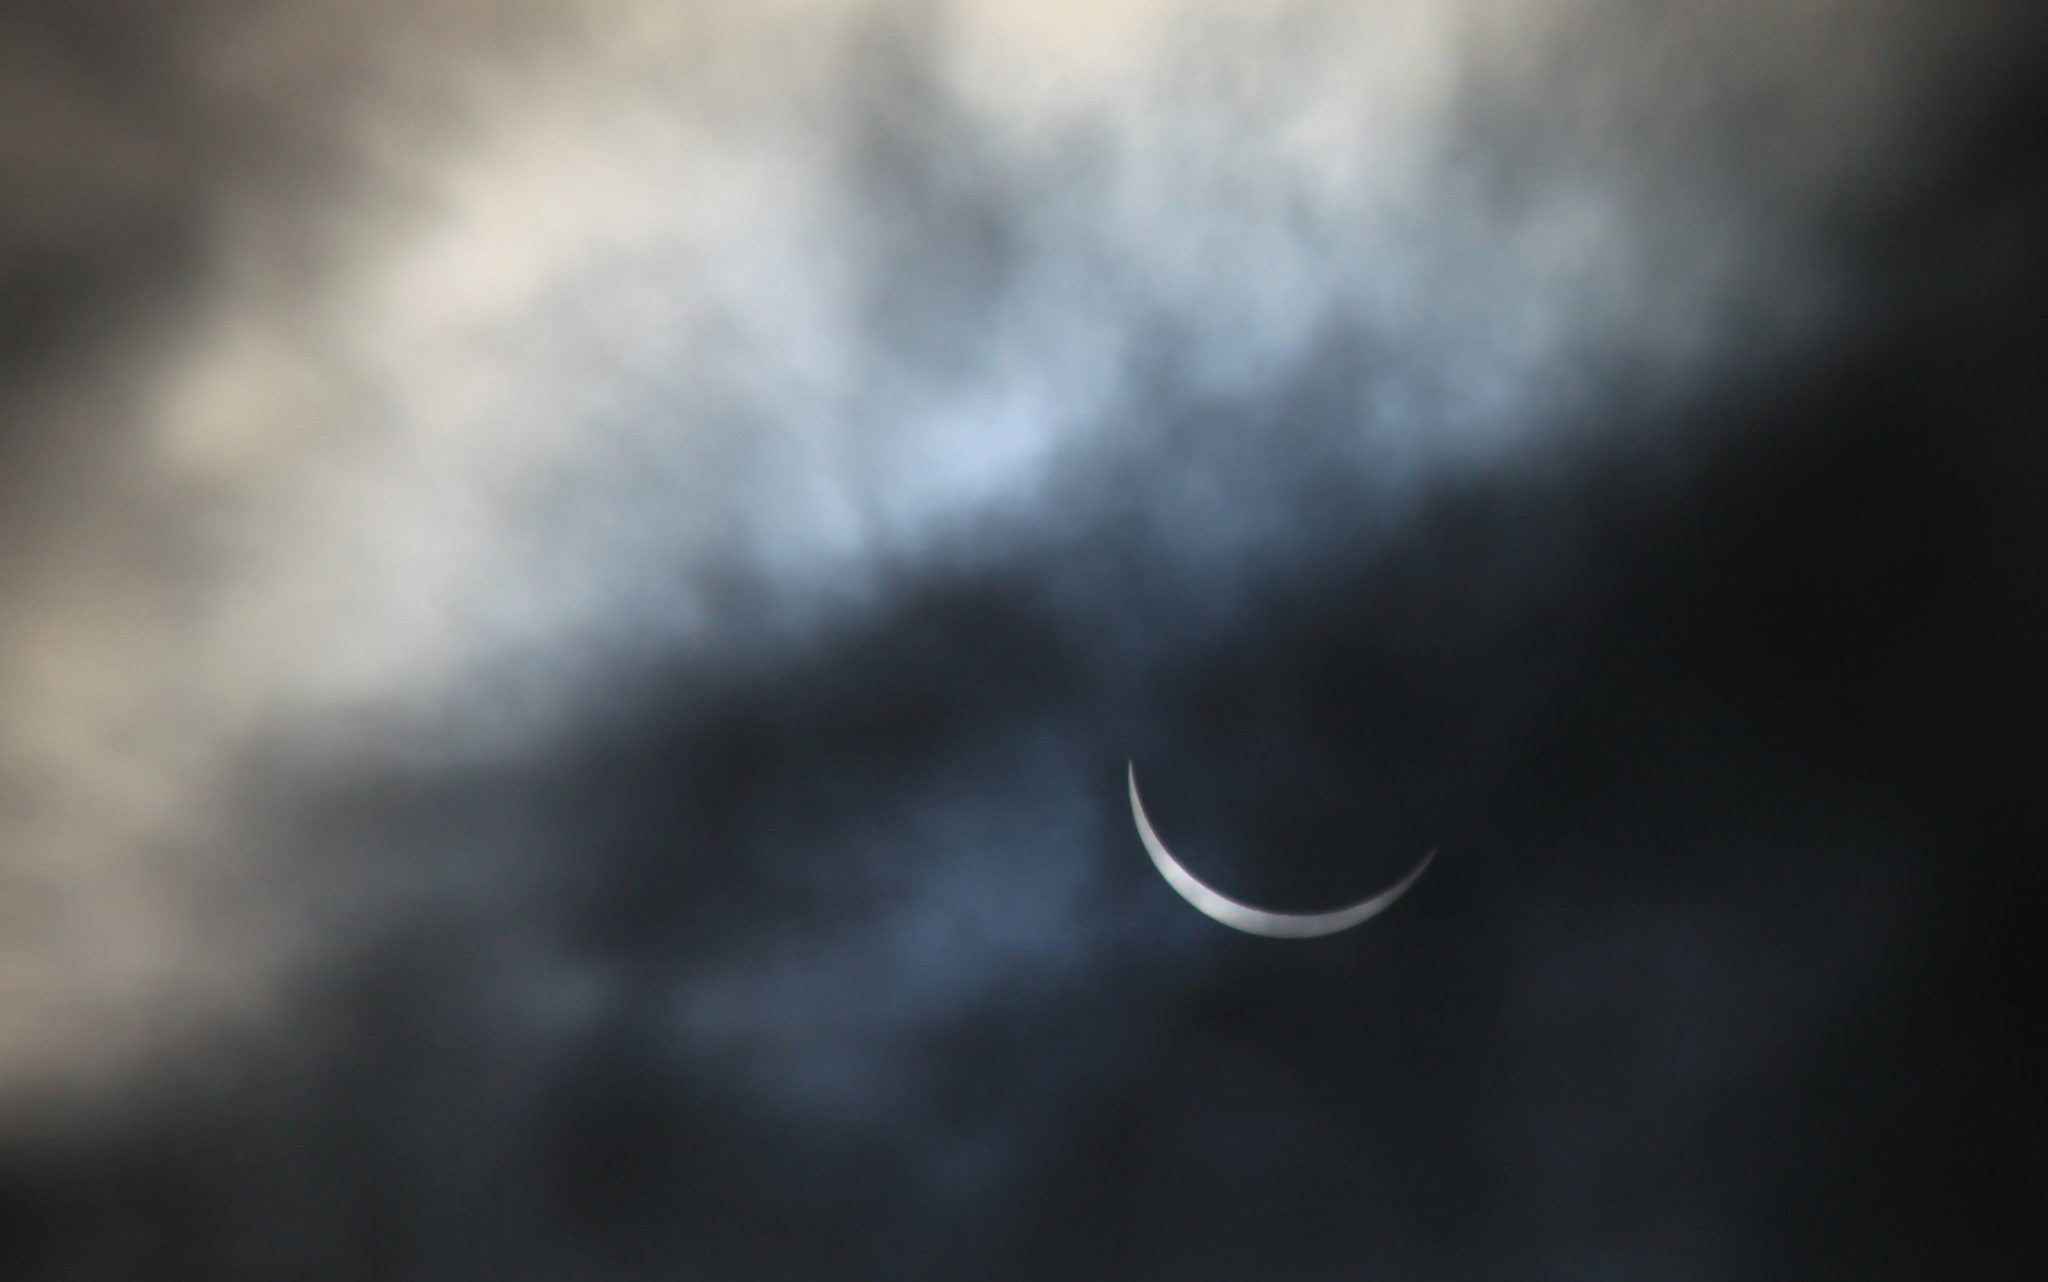 Solar Eclipse 2015 in Northern Ireland